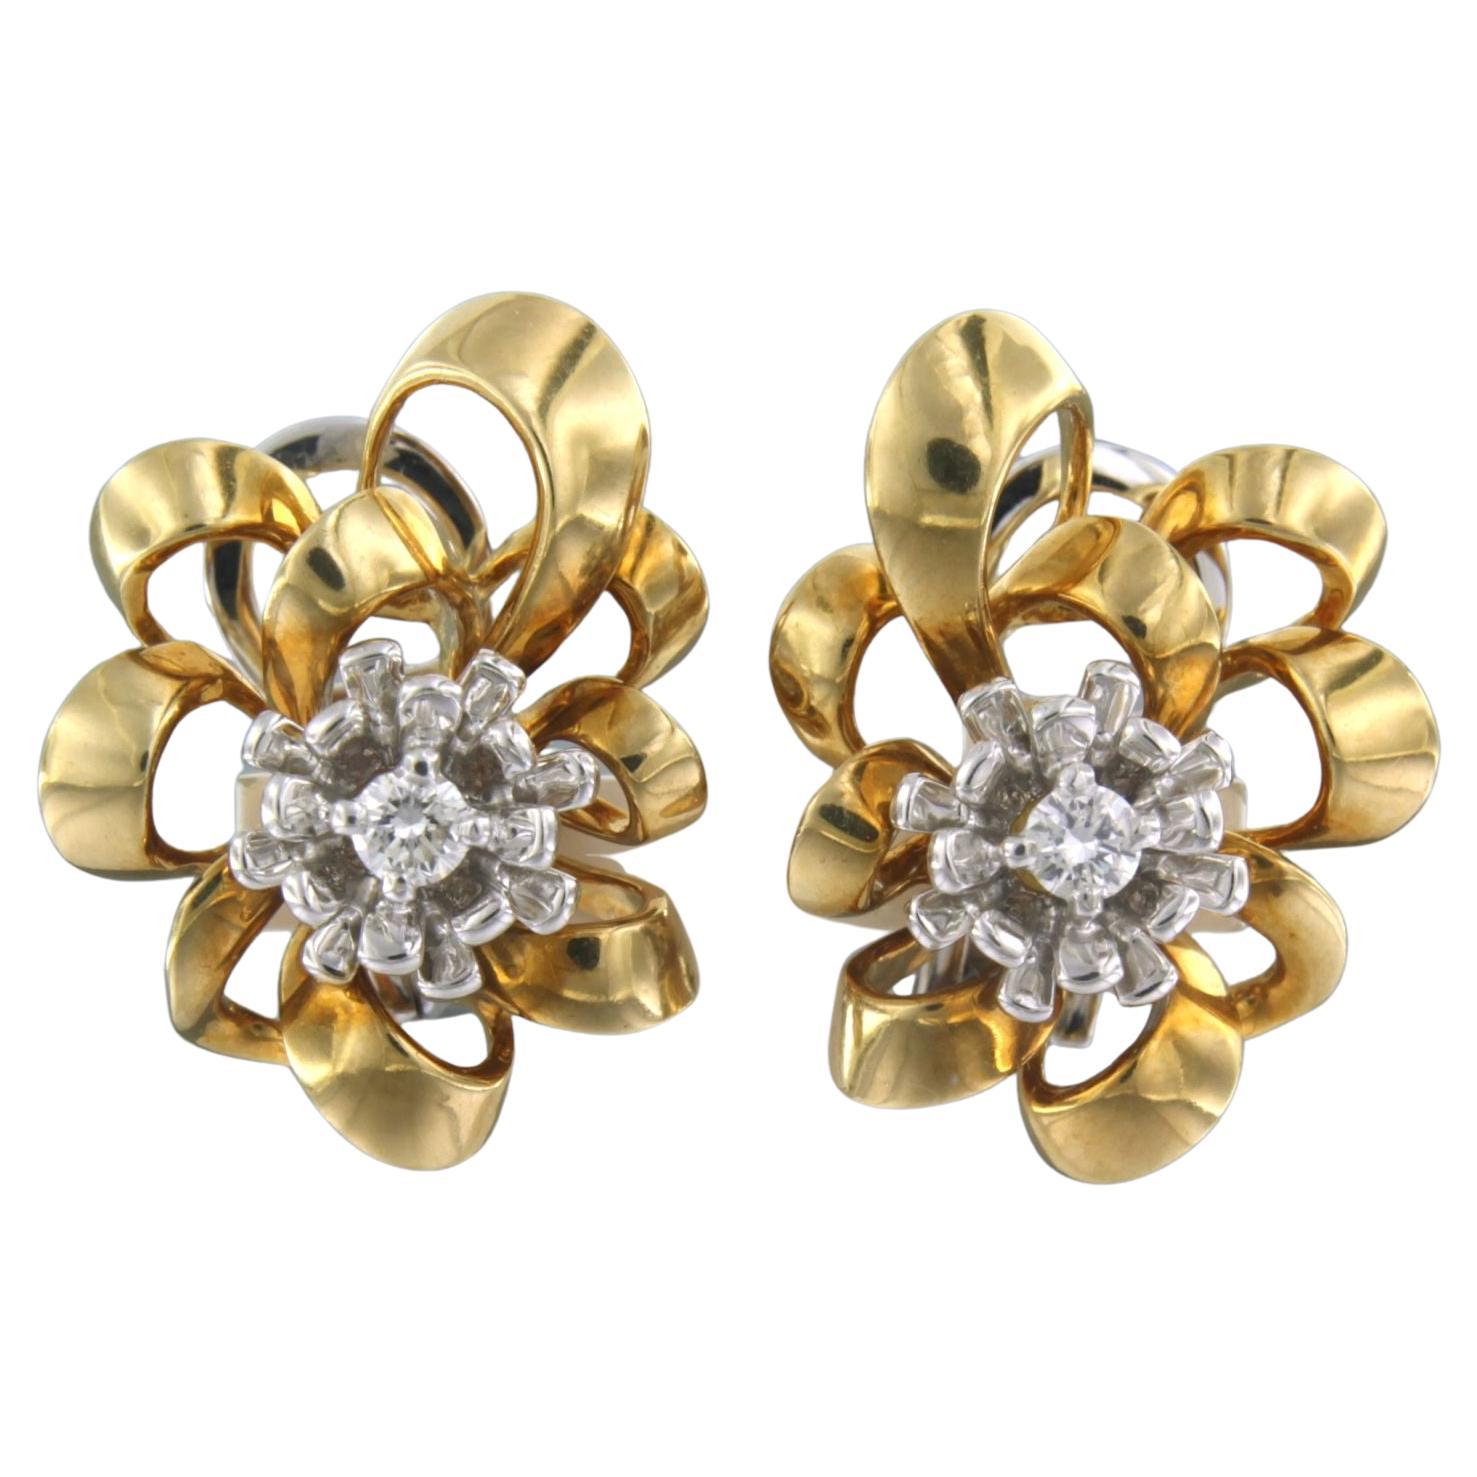 BAUER - Boucles d'oreilles en or bicolore 18 carats serties de diamants